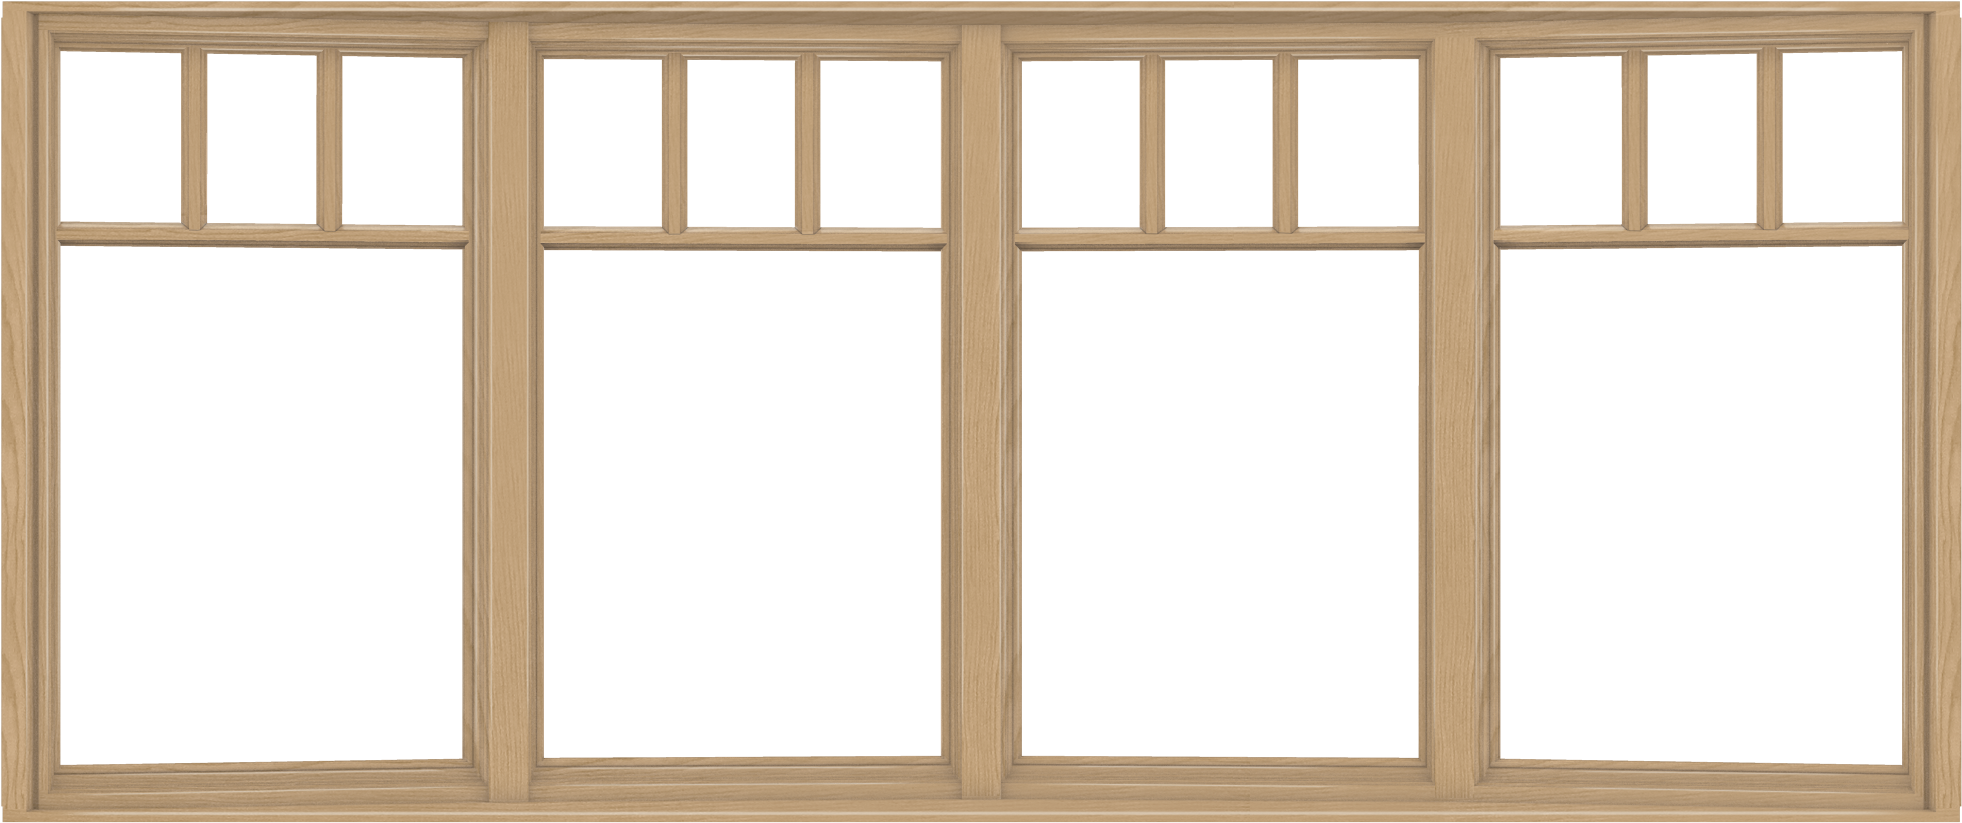 W 4500 Wood Bow Window - Window (2048x2048)